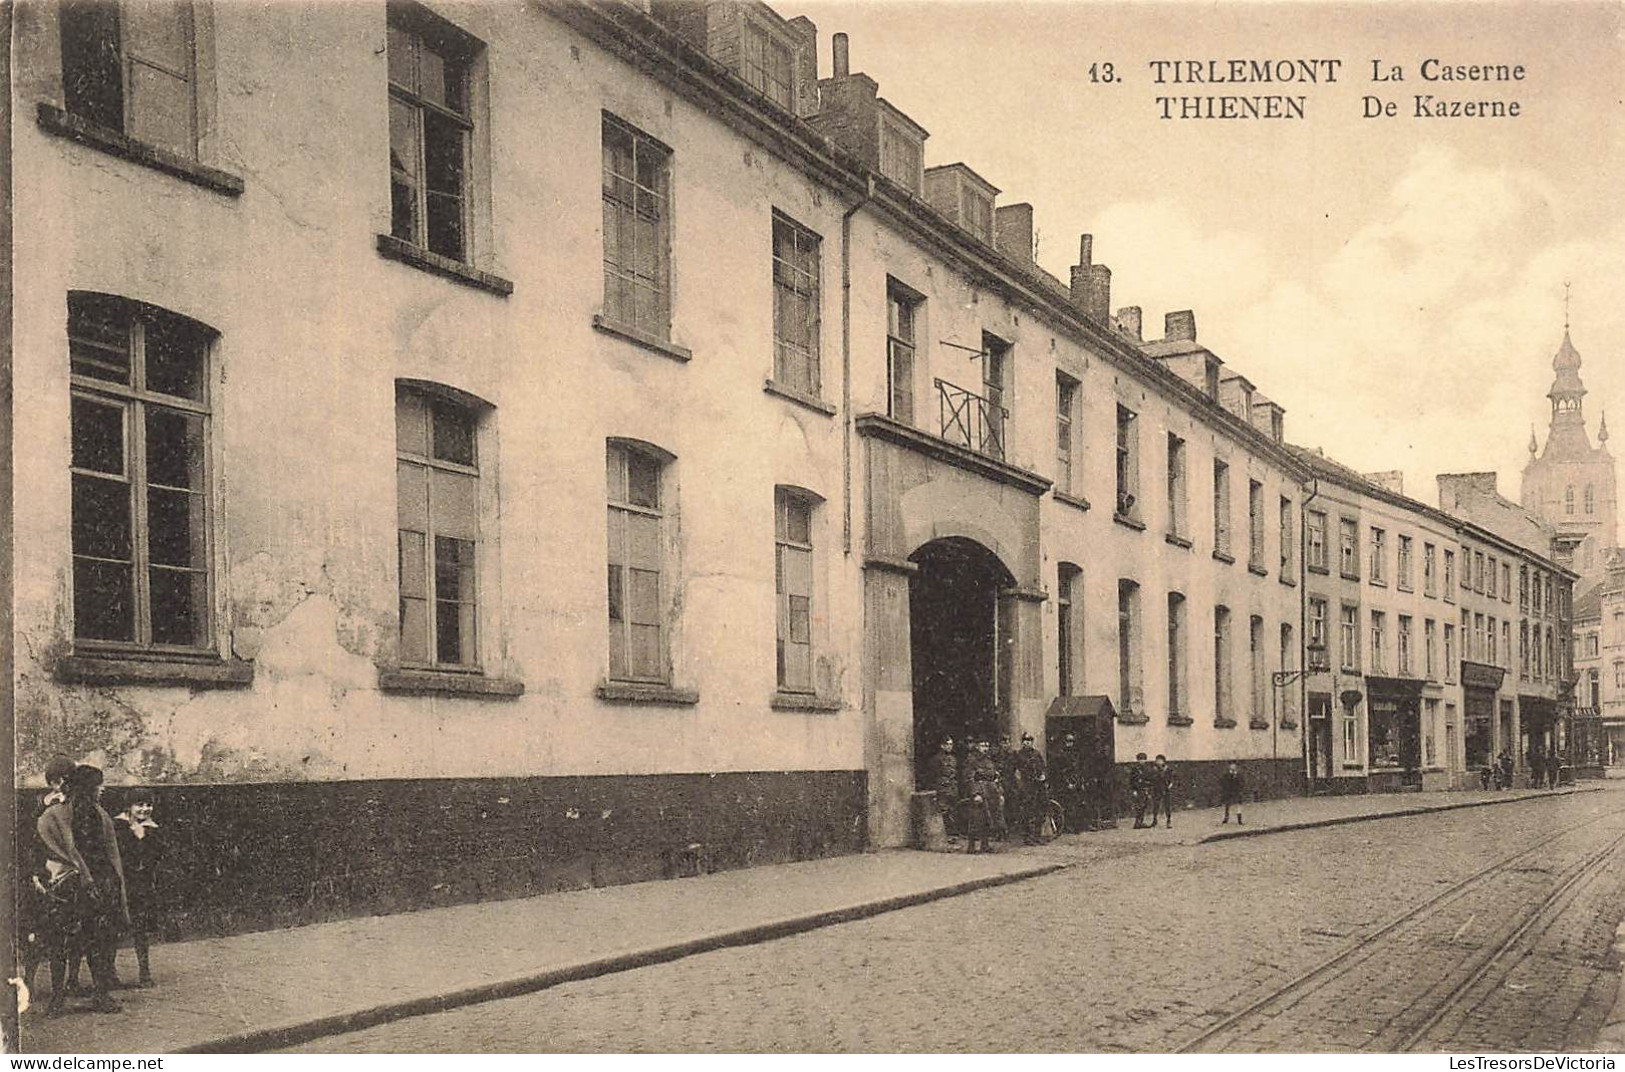 BELGIQUE - Tirlemont - Vue Sur La Caserne - Thienen - De Kazerne - Vue Panoramique - Carte Postale Ancienne - Leuven